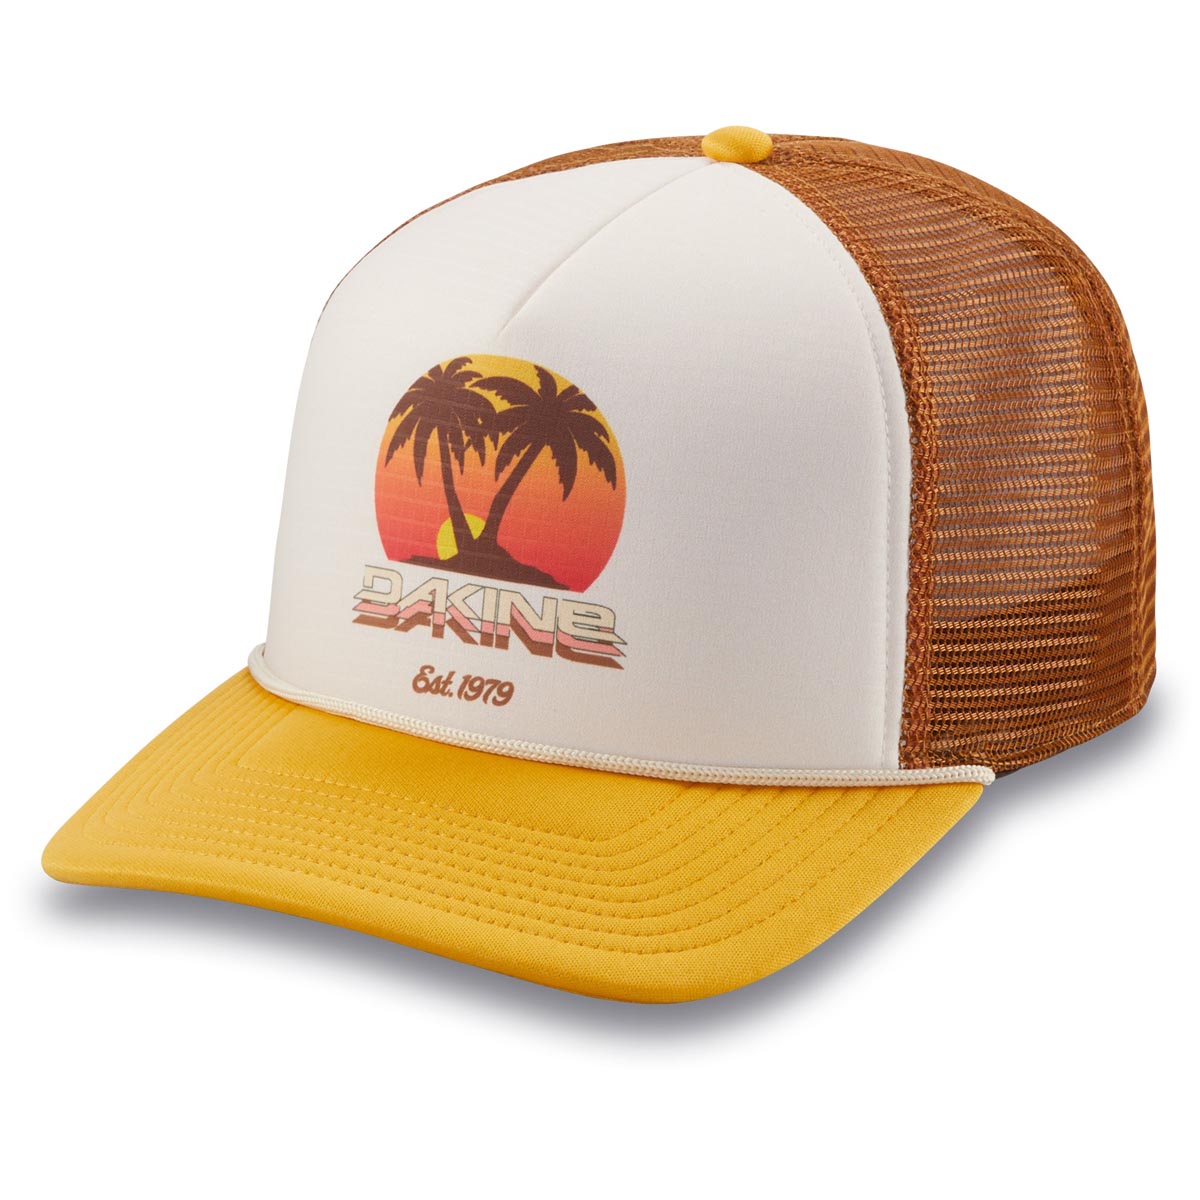 Dakine Vacation Trucker Hat - Golden Haze image 1